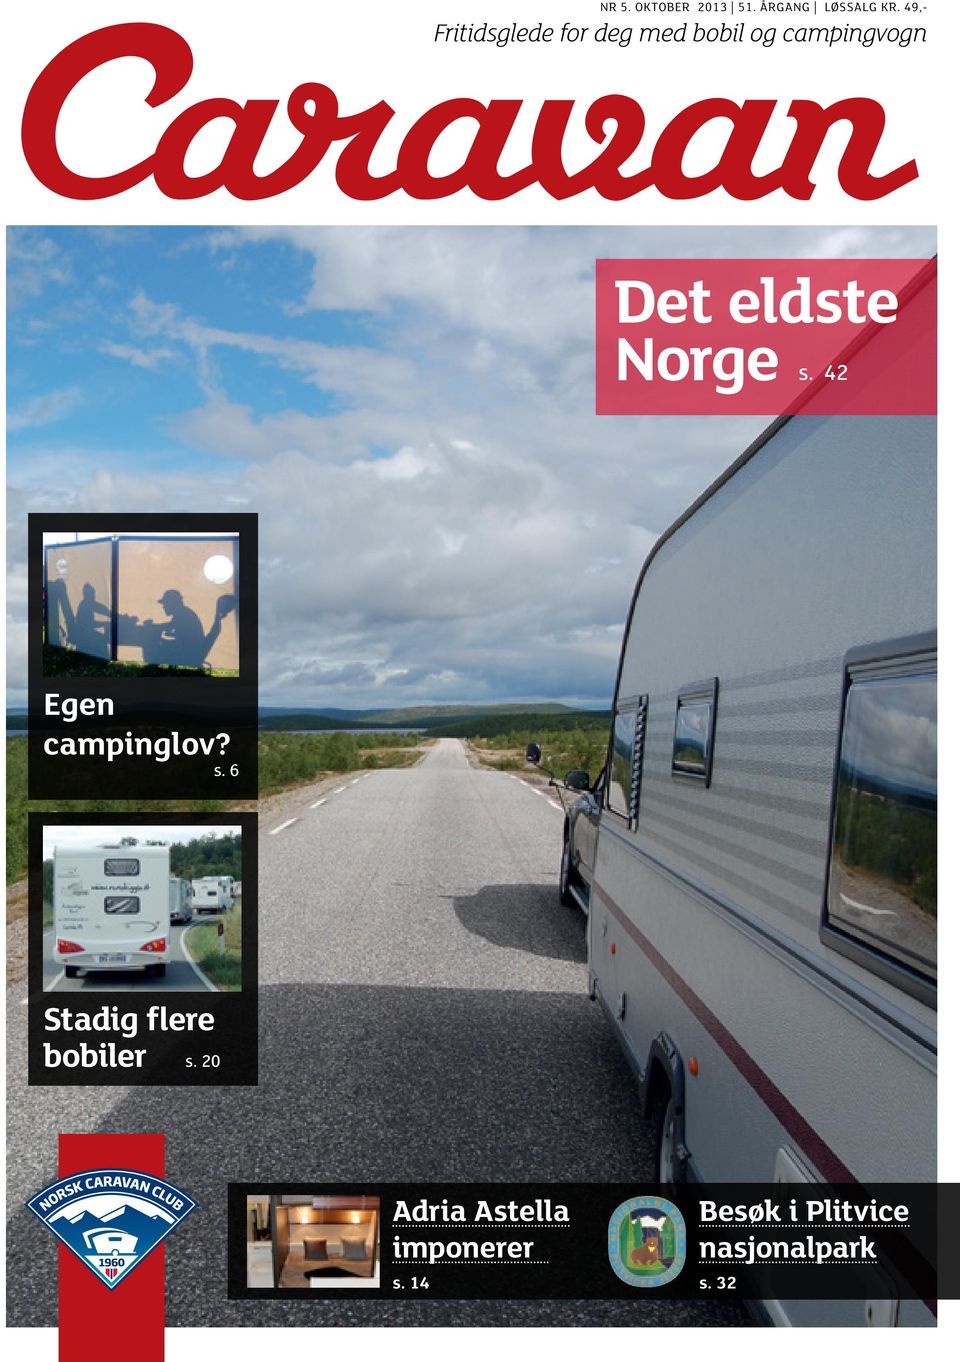 eldste Norge s. 42 Egen campinglov? s. 6 Stadig flere bobiler s.